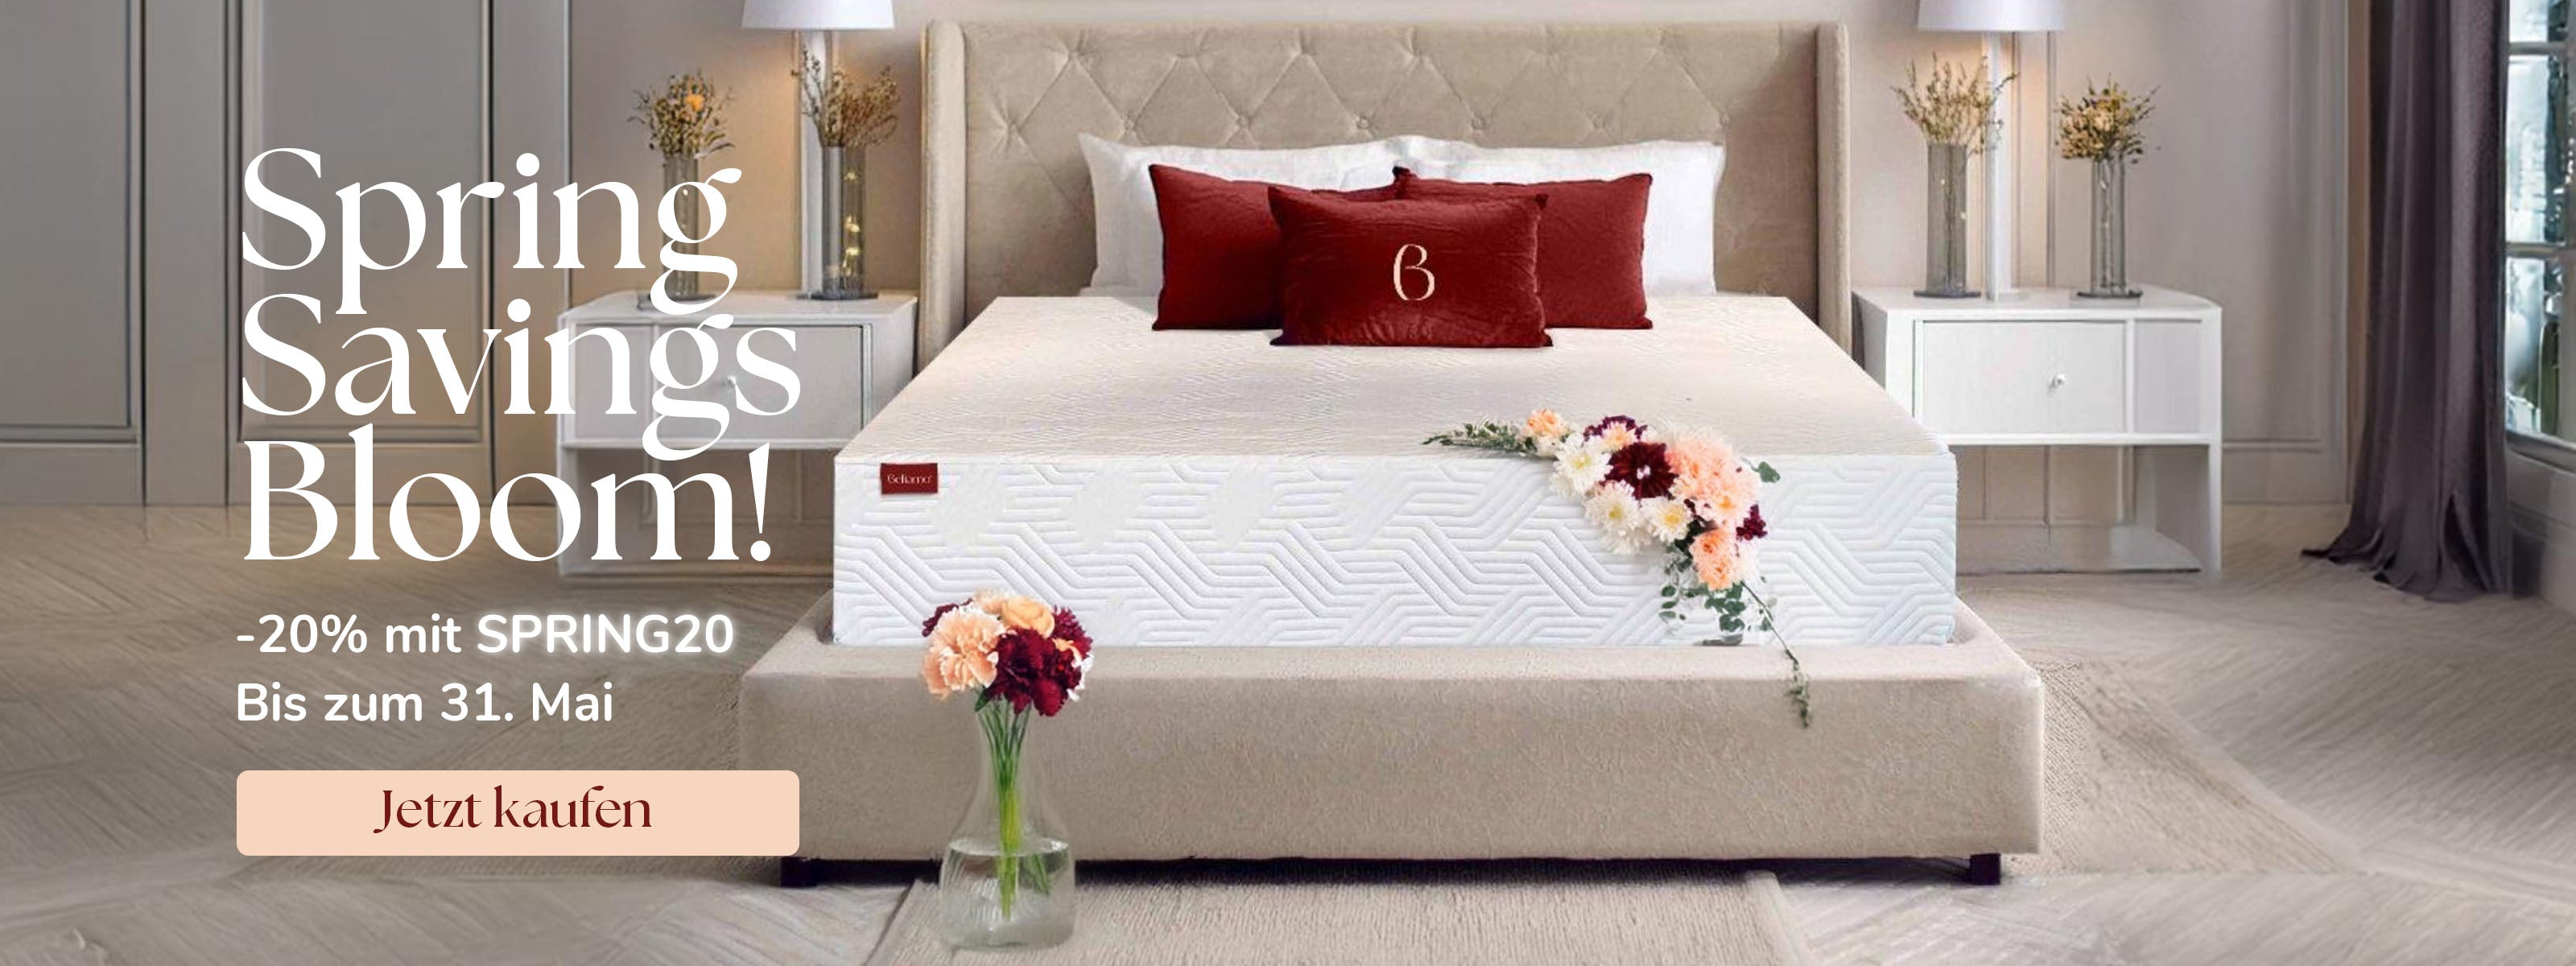 Frühlingsangebot von Beliamo mit einem modernen Schlafzimmer, beige Bett mit weißer Matratze, roten Kissen und Blumen. Der Text lautet: Spring Savings Bloom! -20% mit SPRING20 Bis zum 31. Mai. Jetzt kaufen.